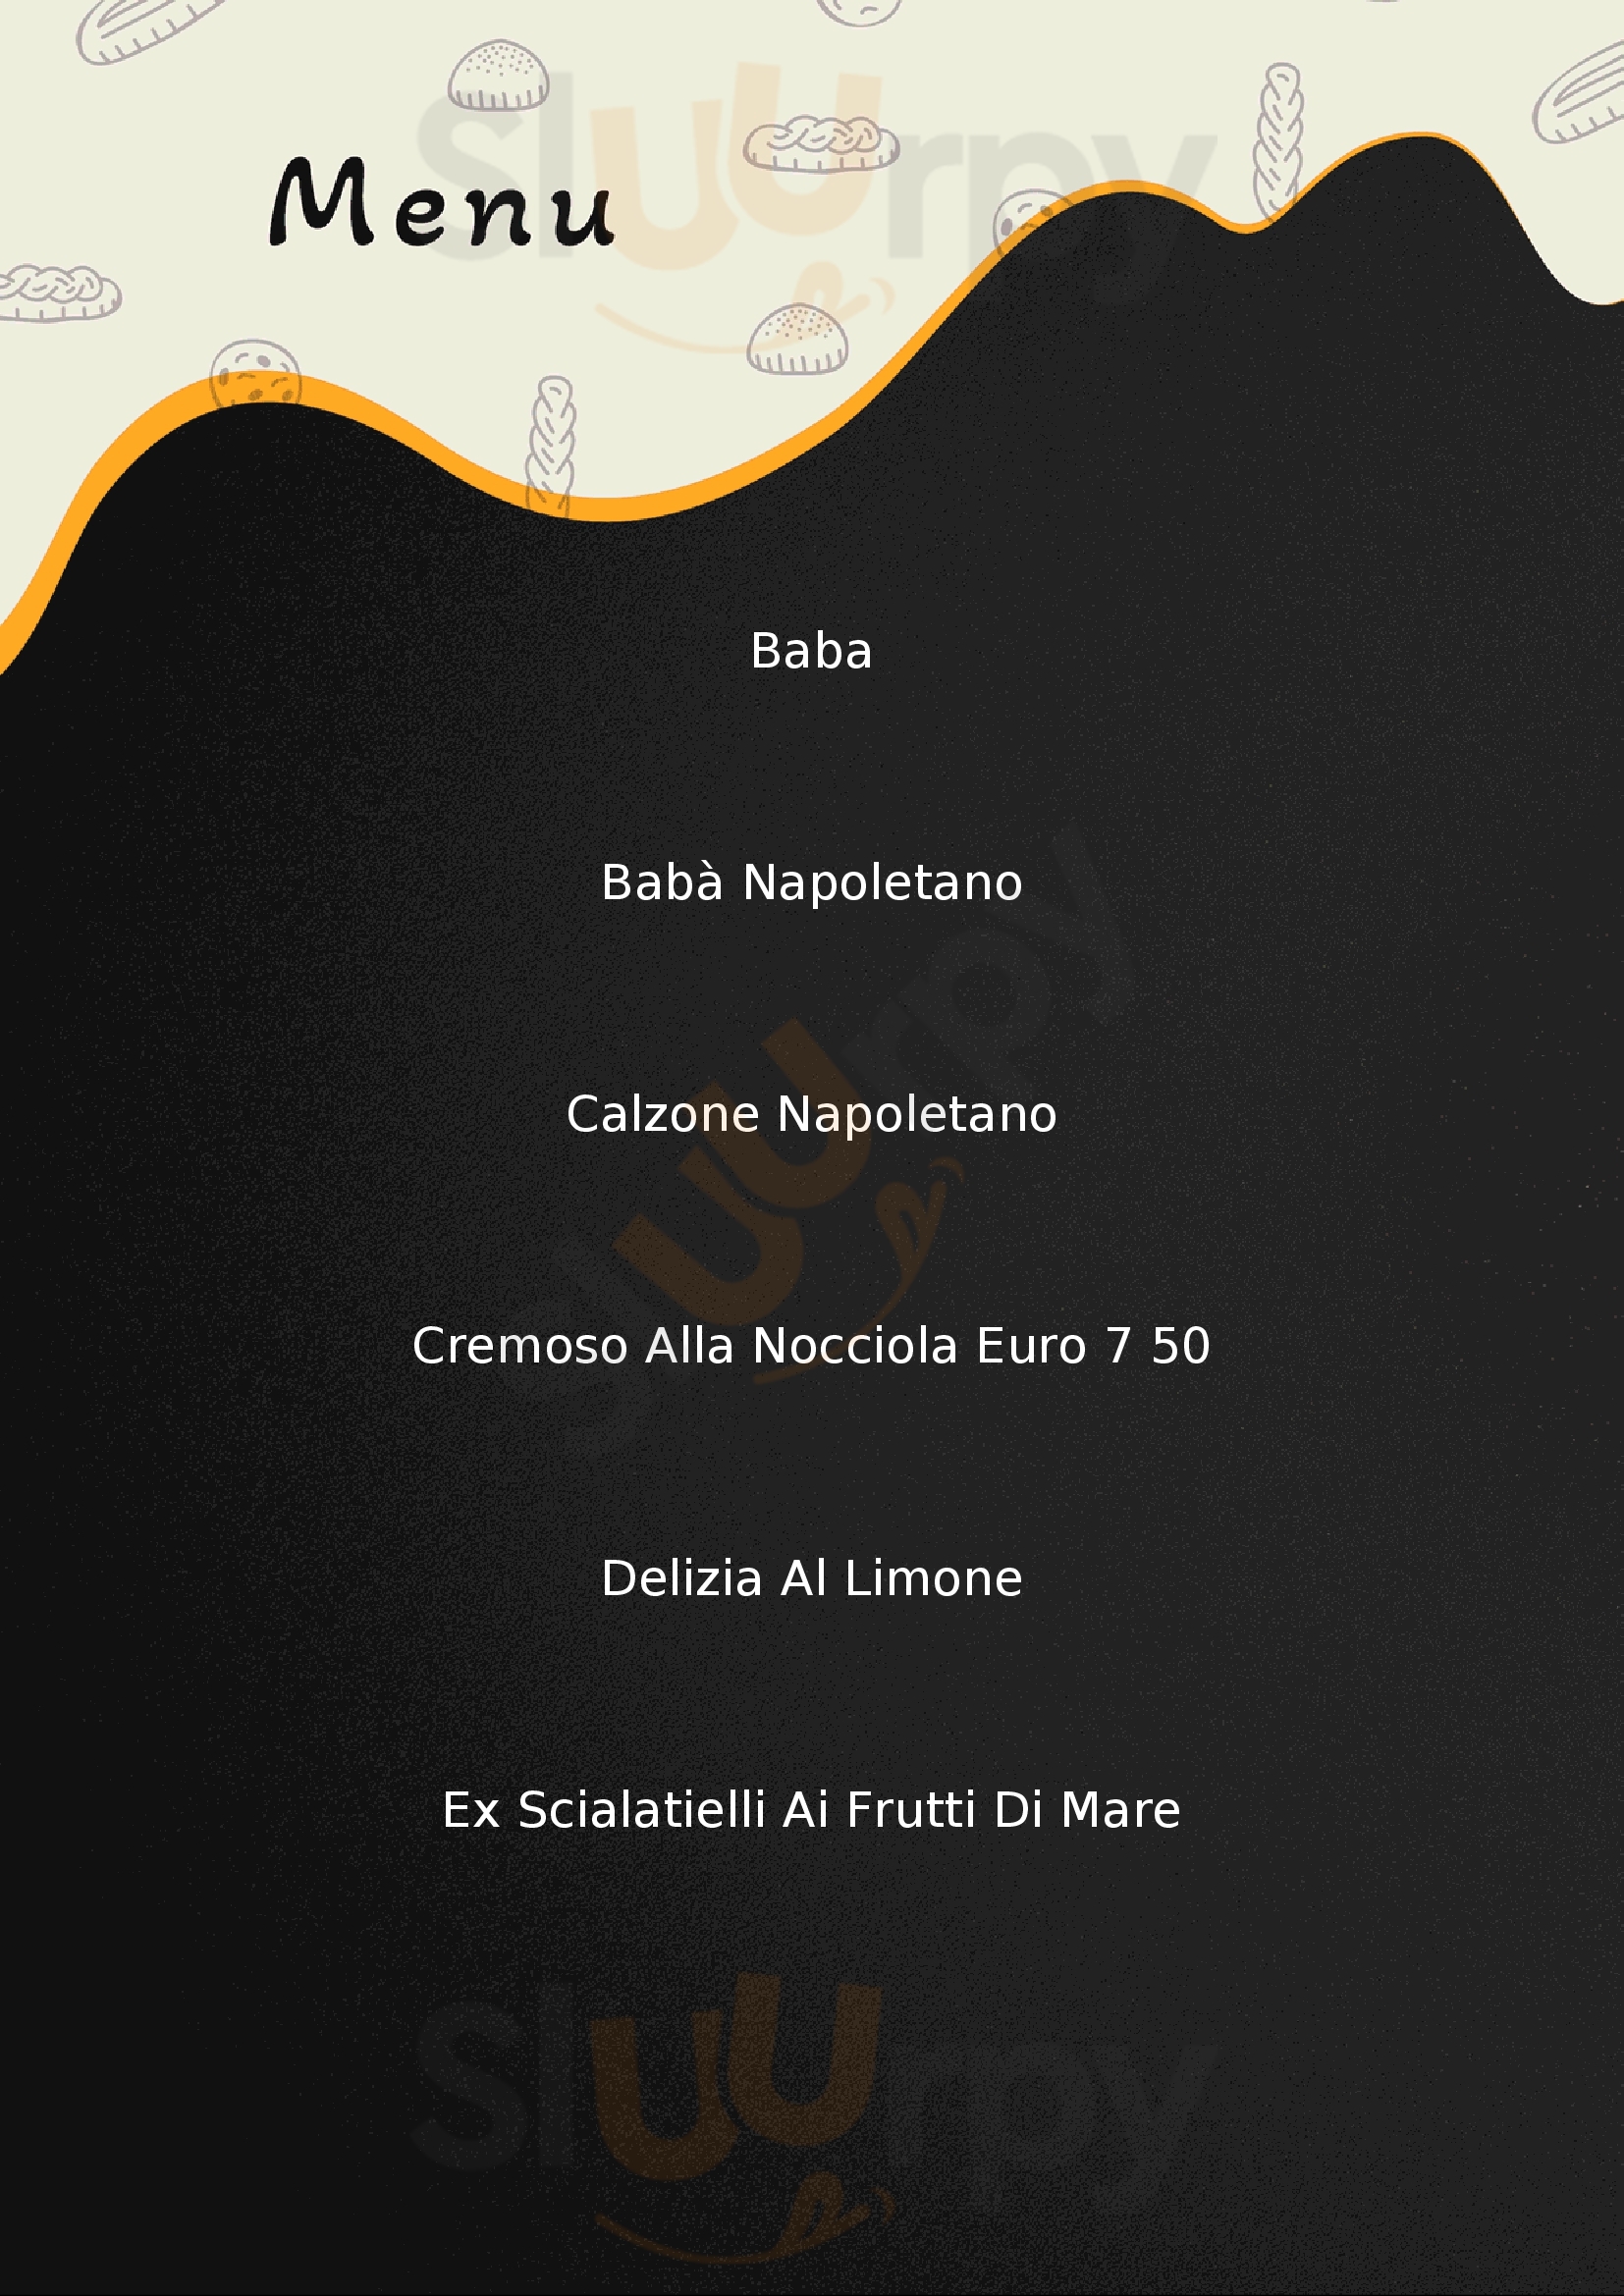 Farinella Restaurant Barberino Di Mugello menù 1 pagina